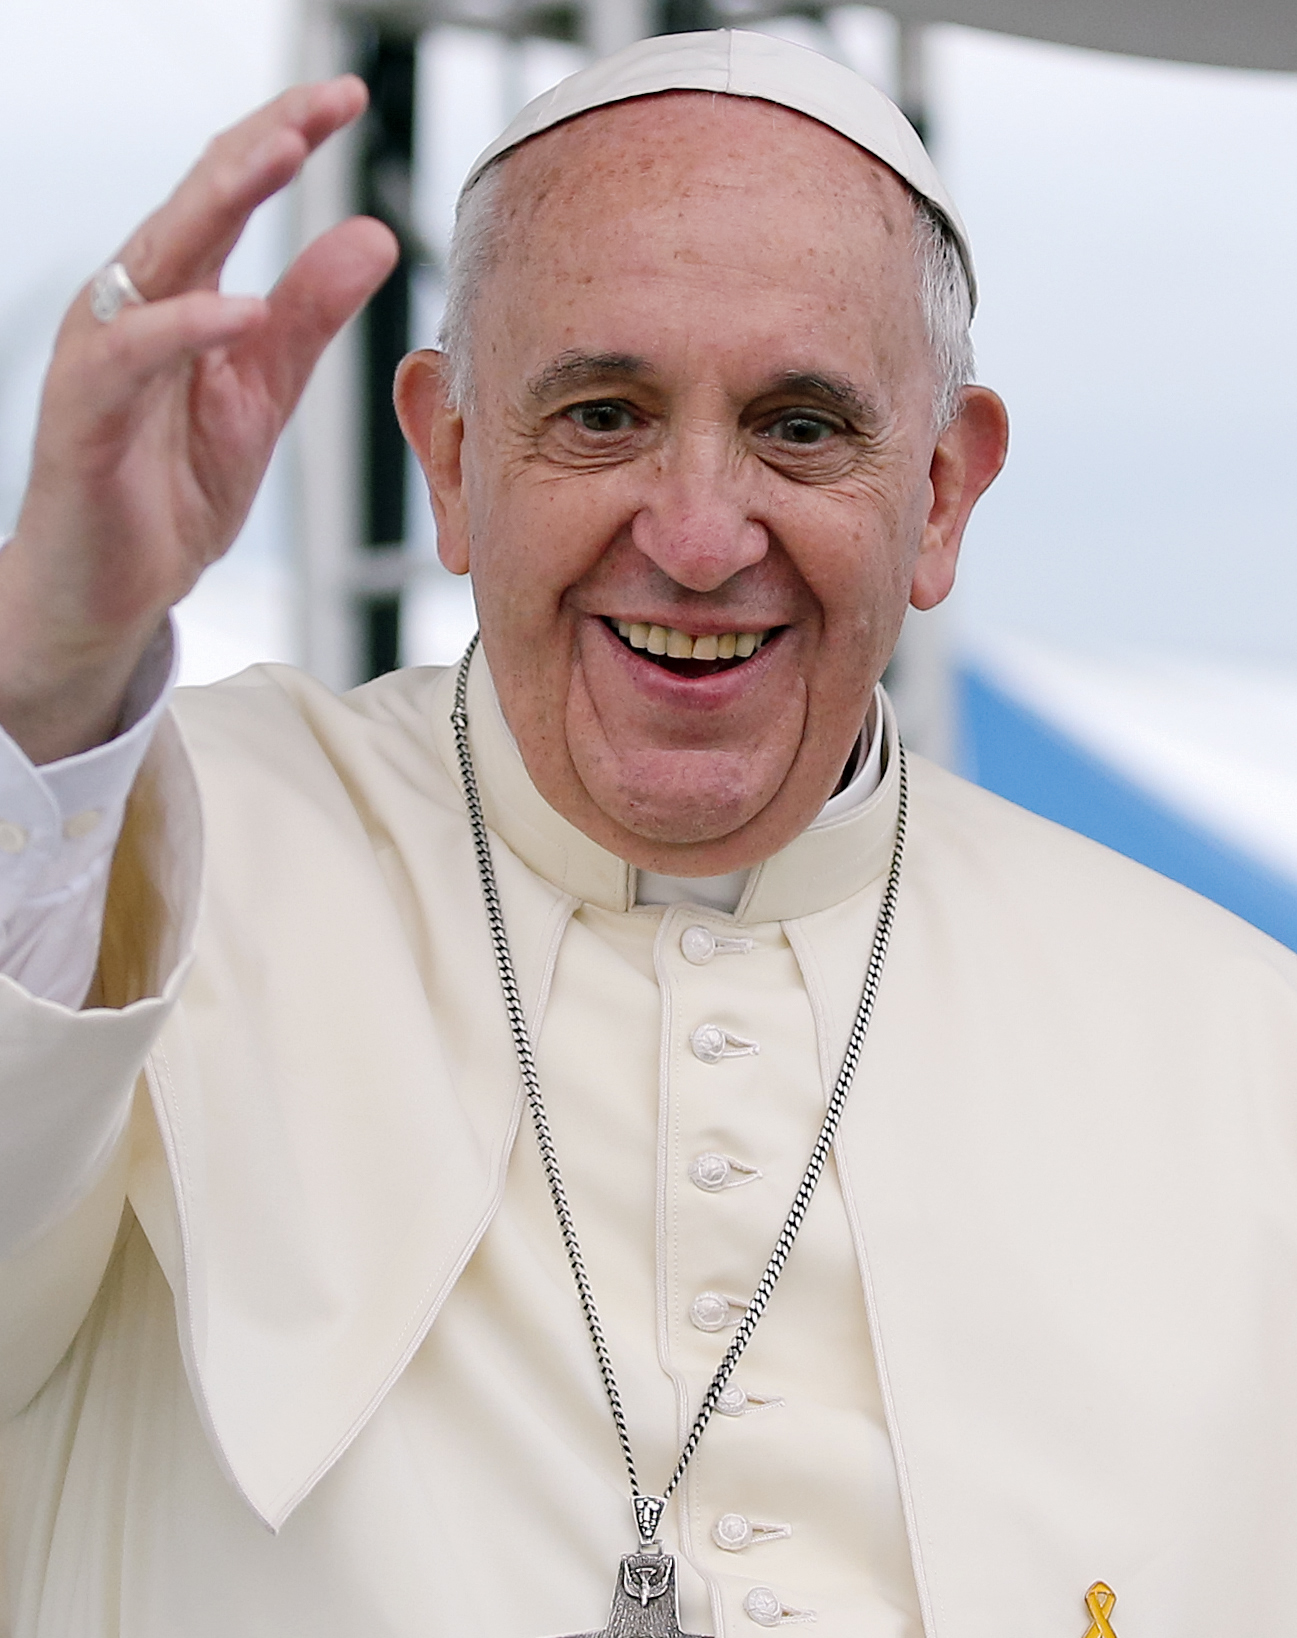 El Papa Francisco abre la puerta al uso de anticonceptivos contra el Zika